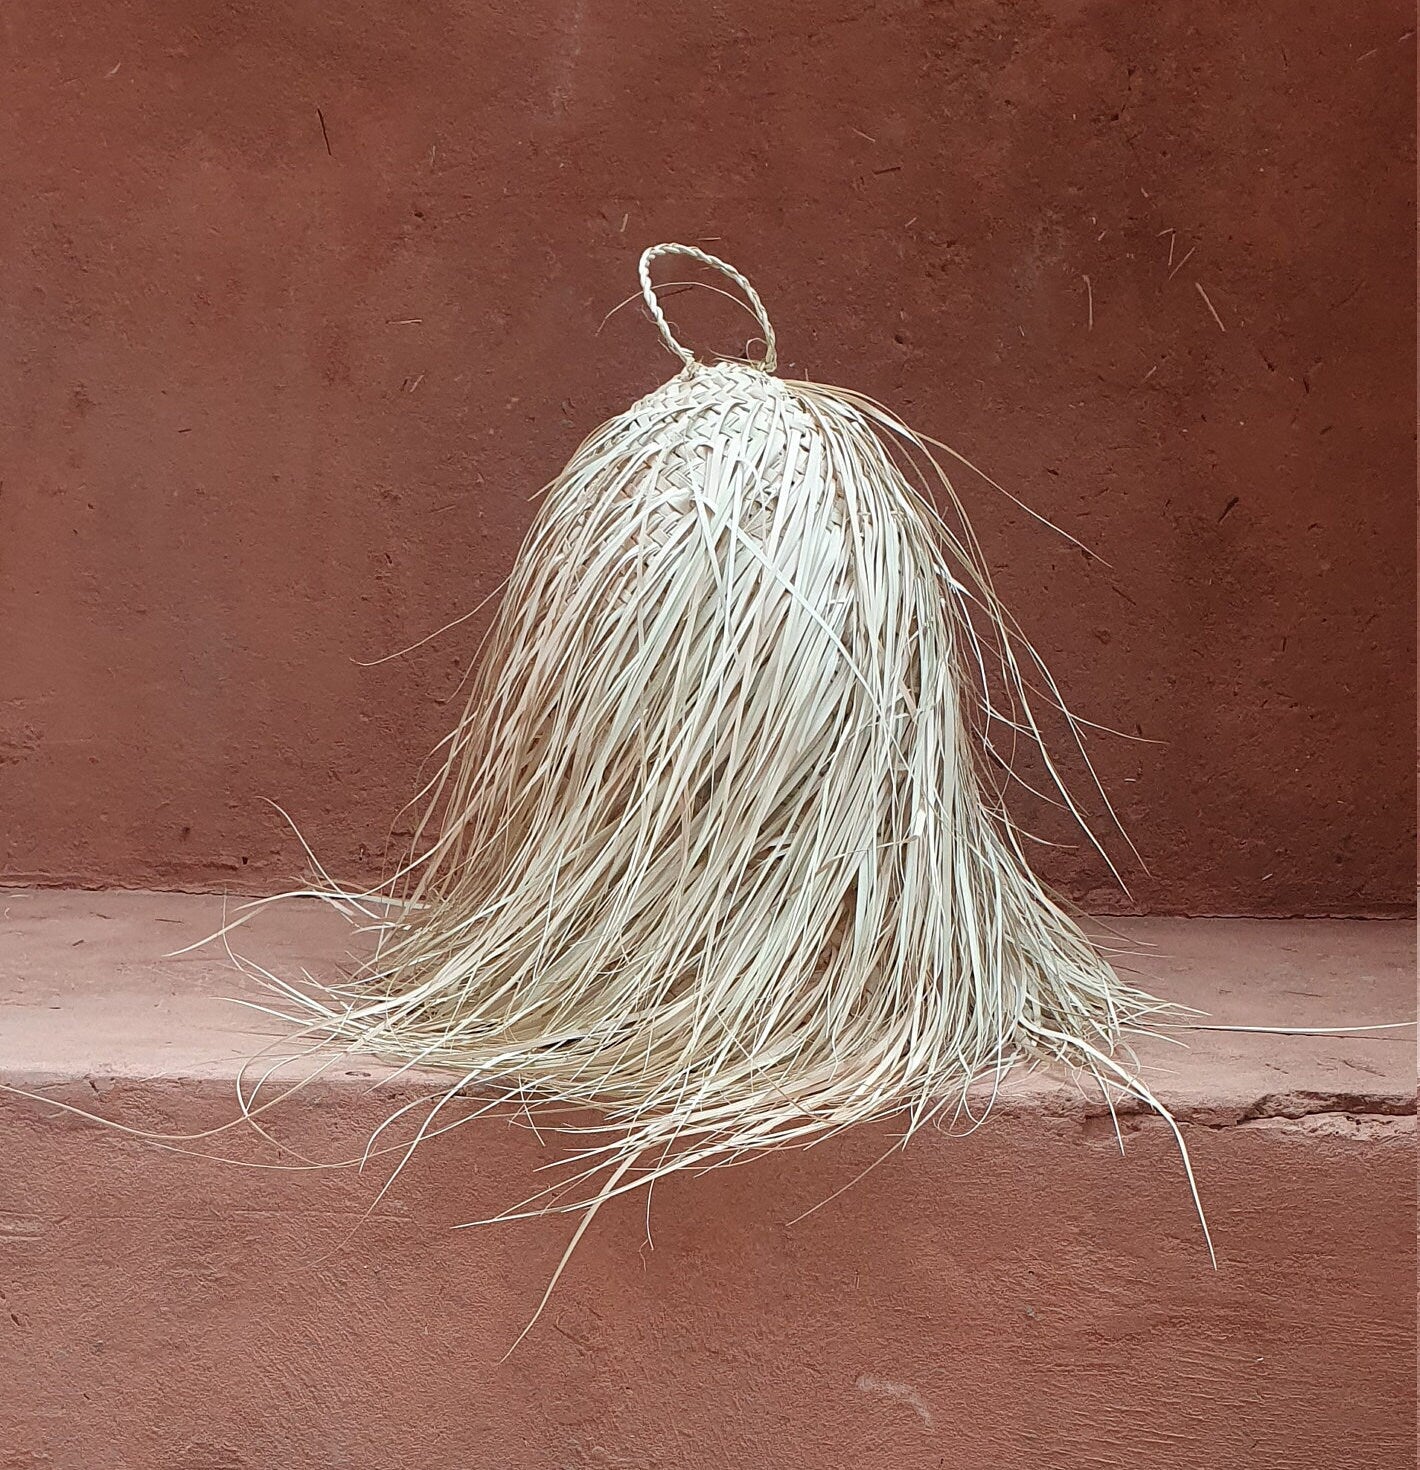 Suspension artisanale en forme de cône en feuille de palmier.